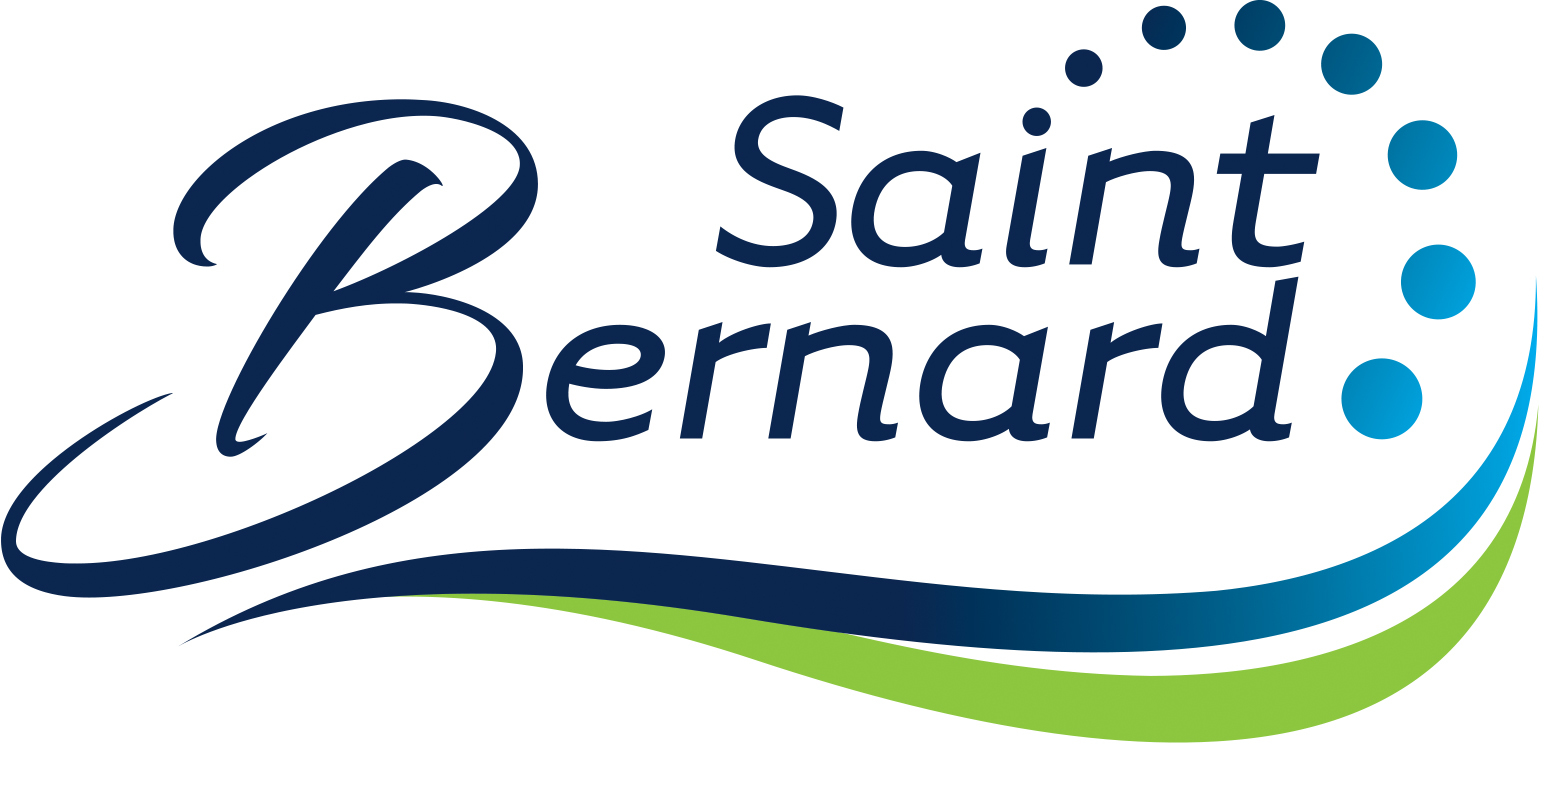 Municipalité de Saint-Bernard